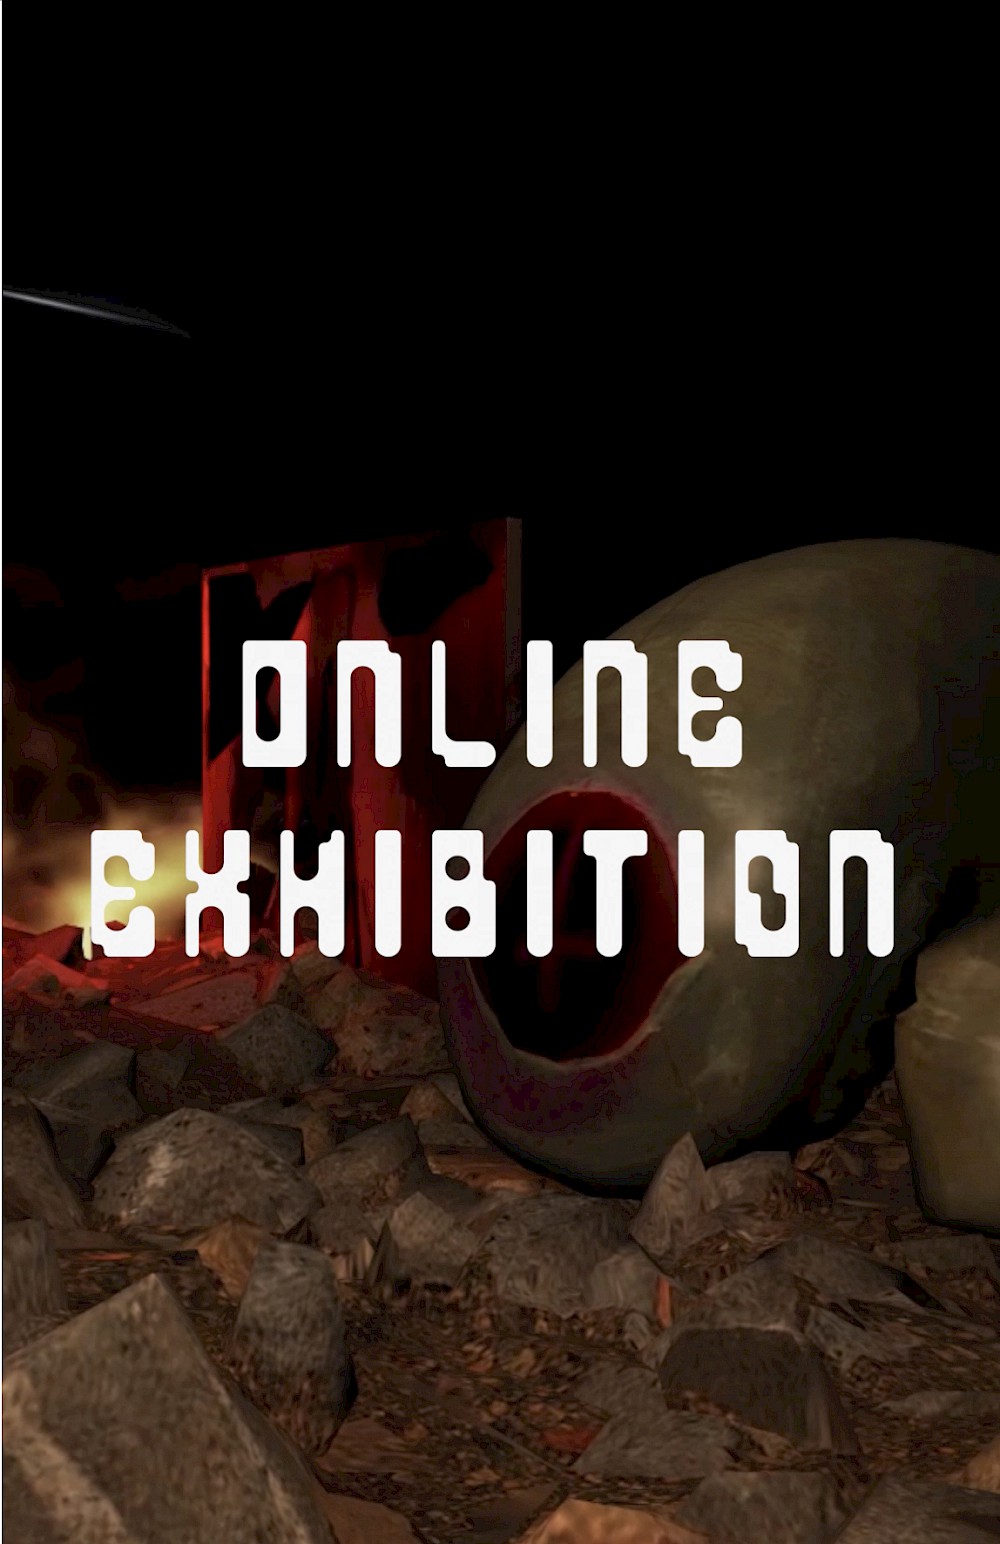 Nachbericht zur Online-Ausstellung 2020